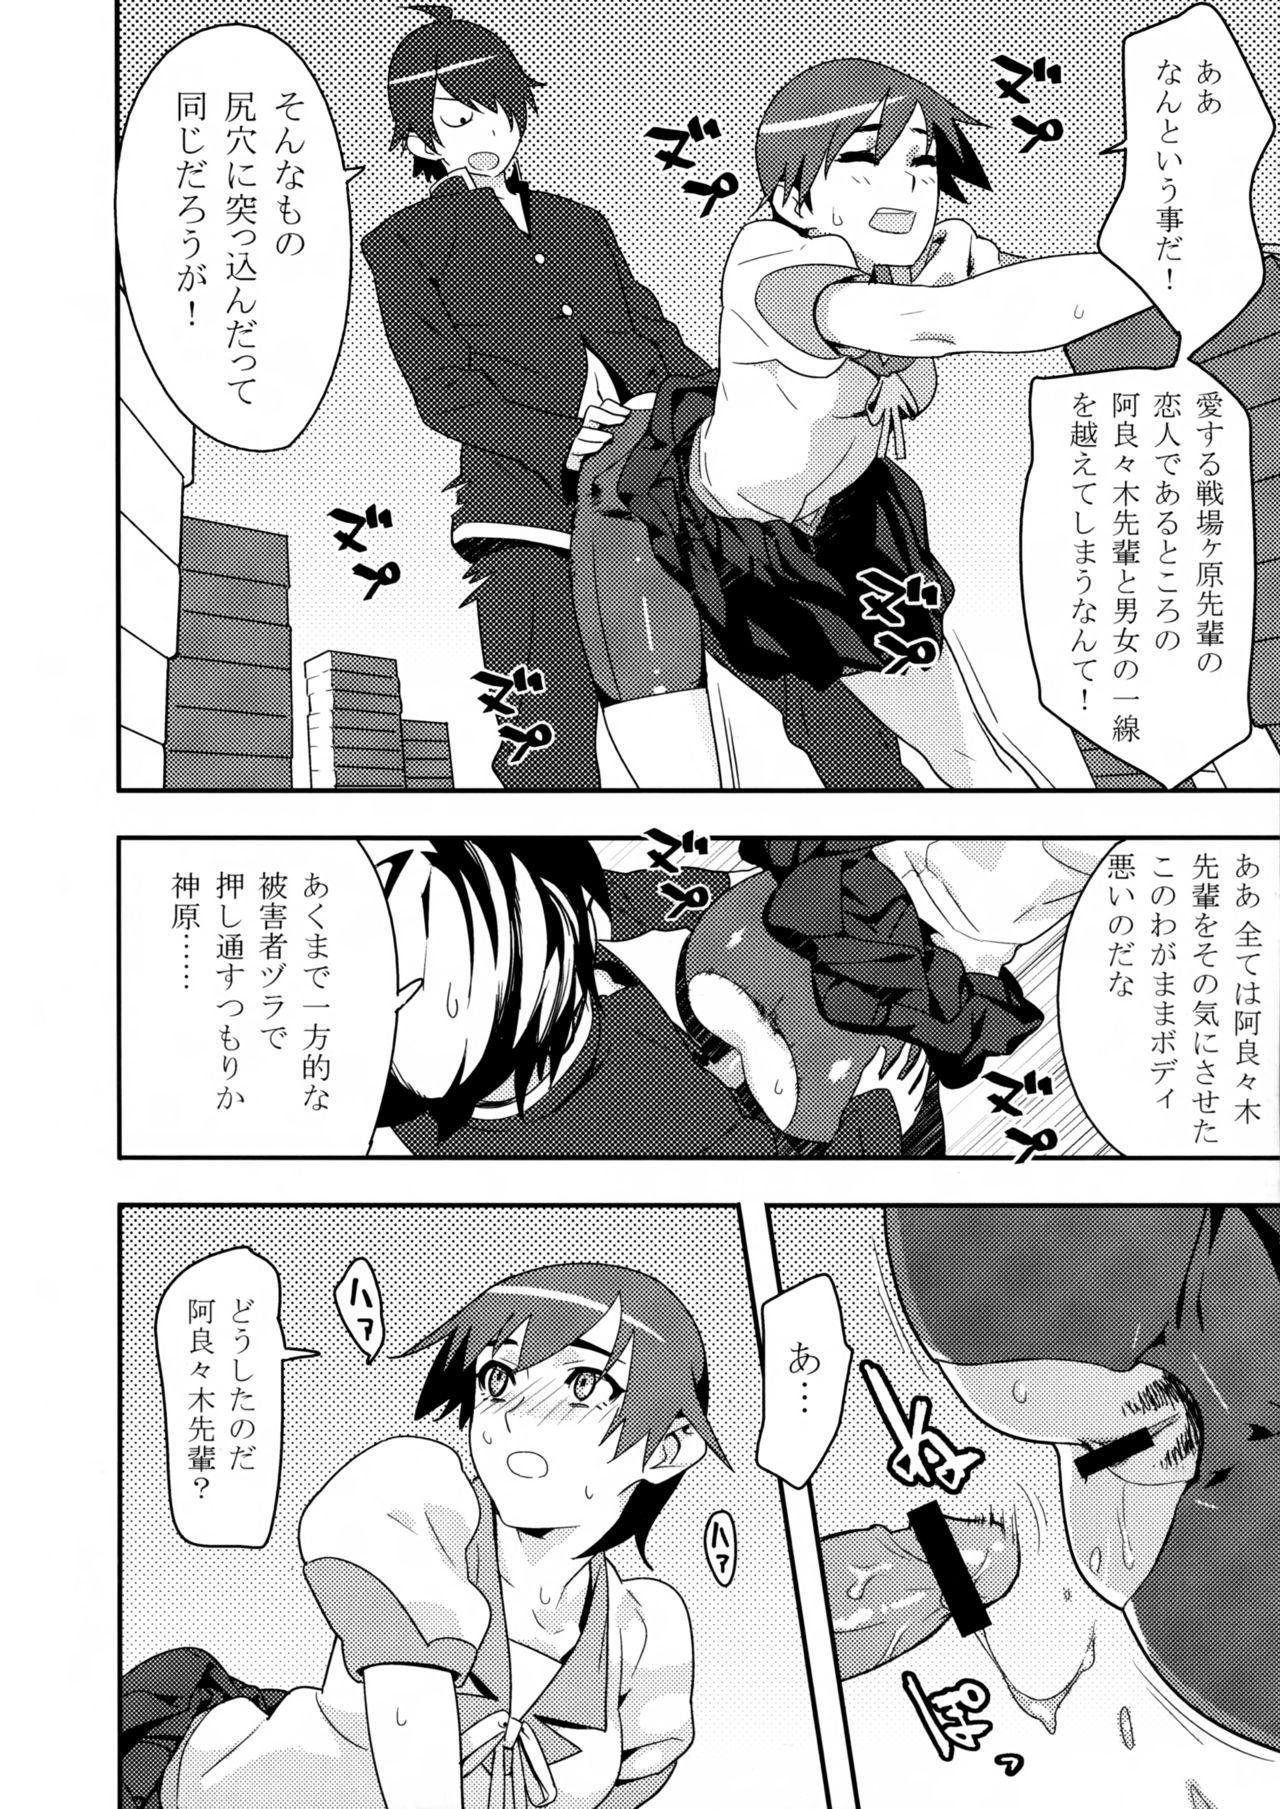 Culito Kimi ga Shiranai Monogatari - Bakemonogatari Family - Page 12